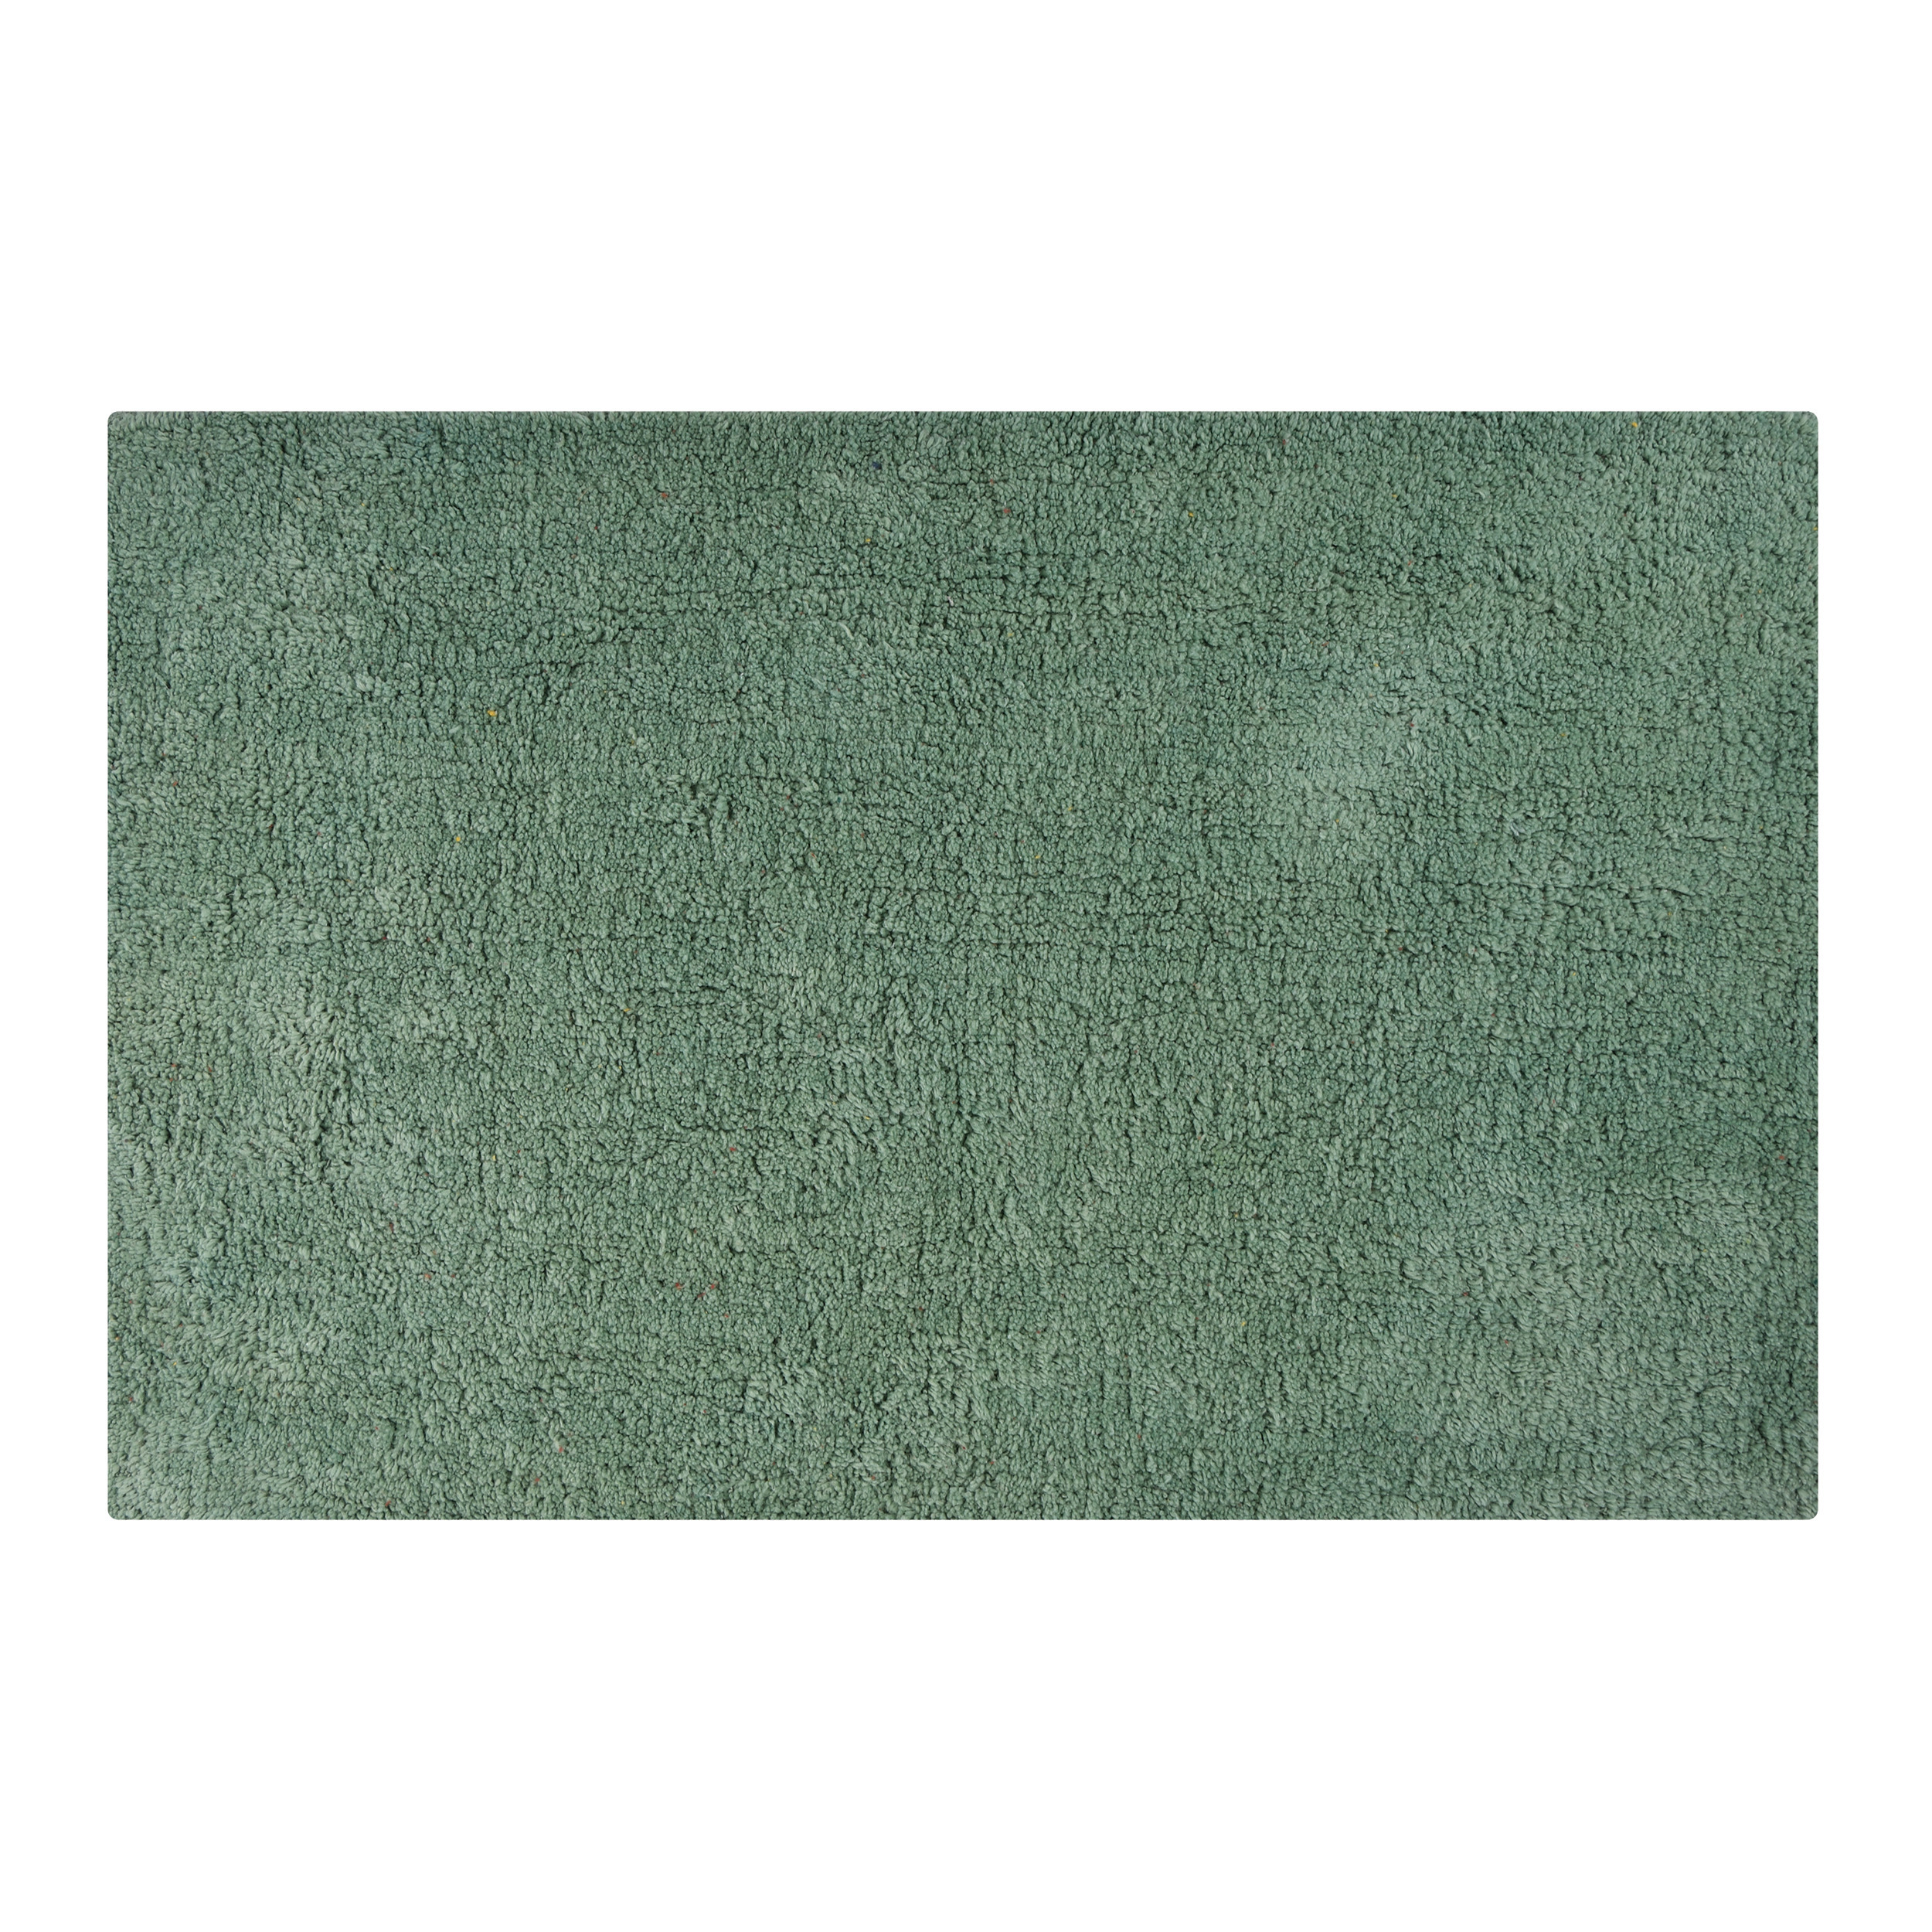 Badkamerkleedje-badmat tapijtje voor op de vloer groen 40 x 60 cm